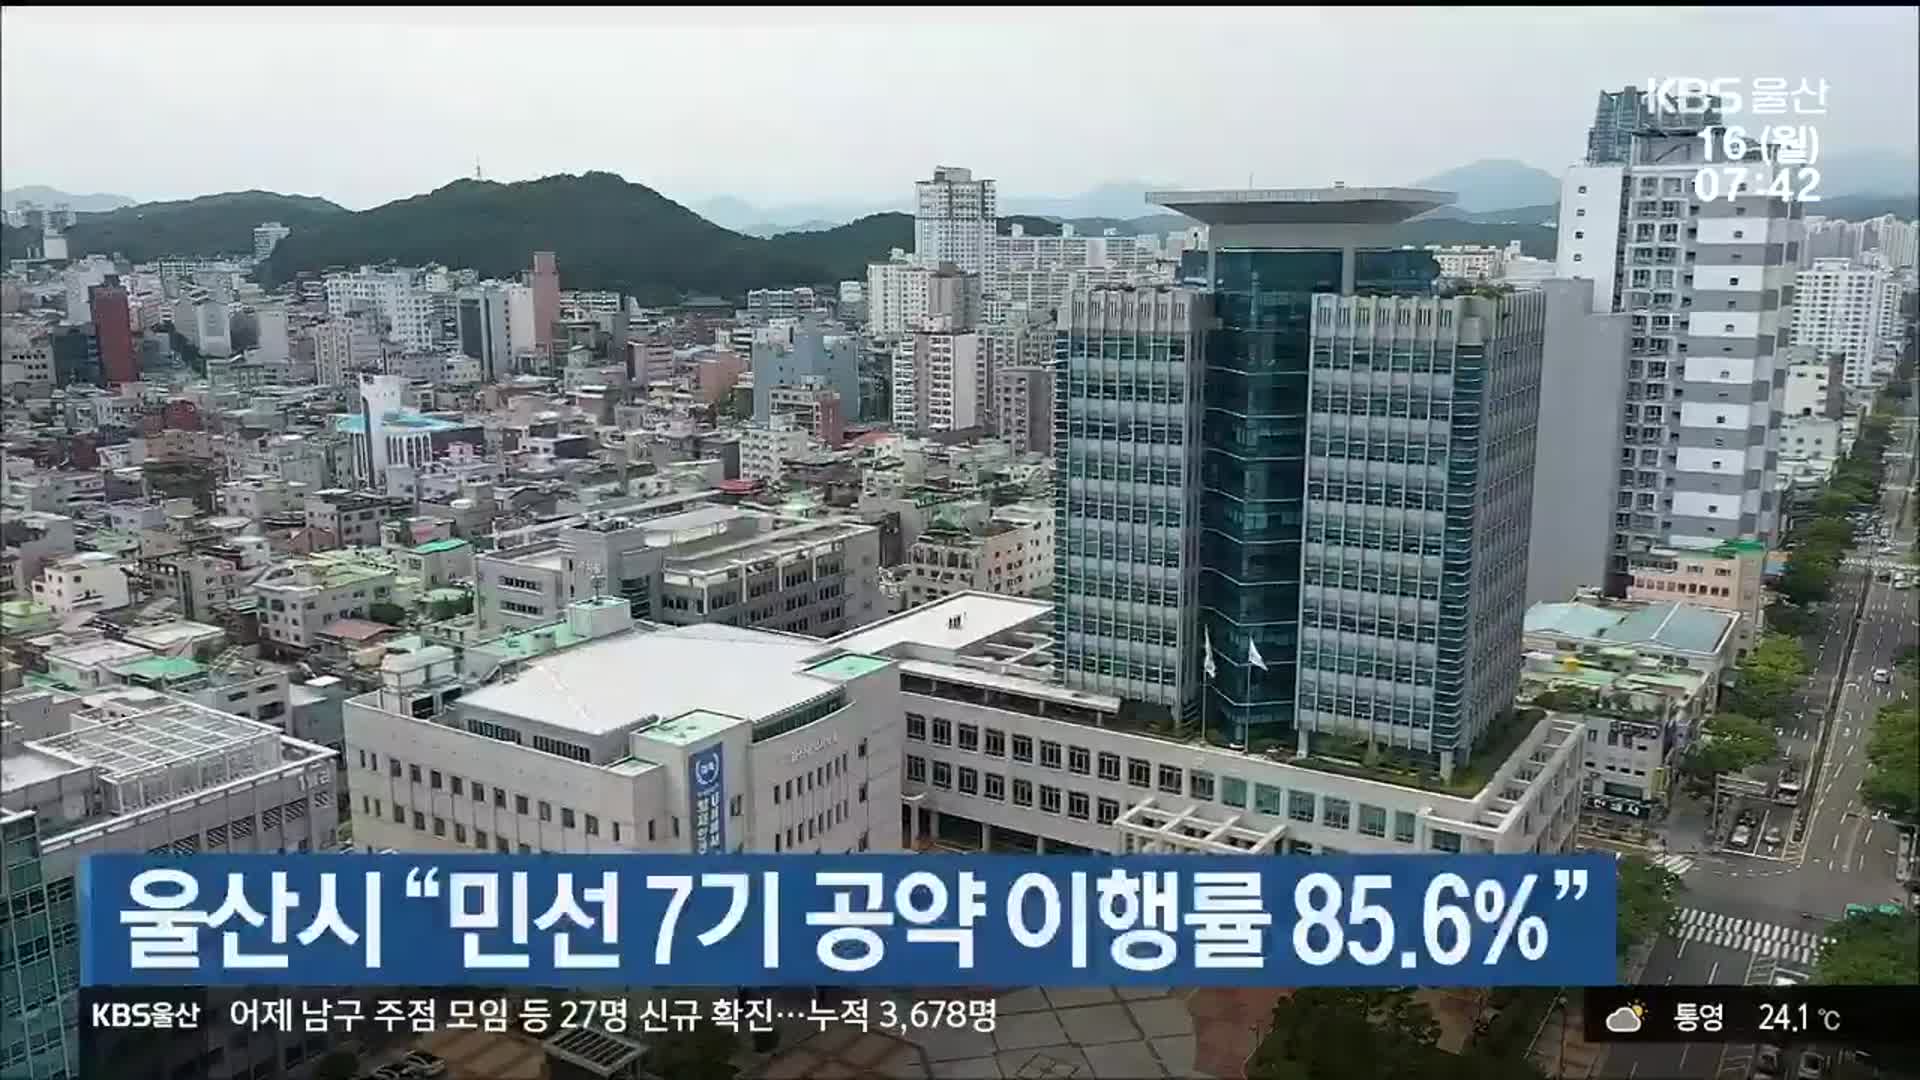 울산시 “민선 7기 공약 이행률 85.6%”